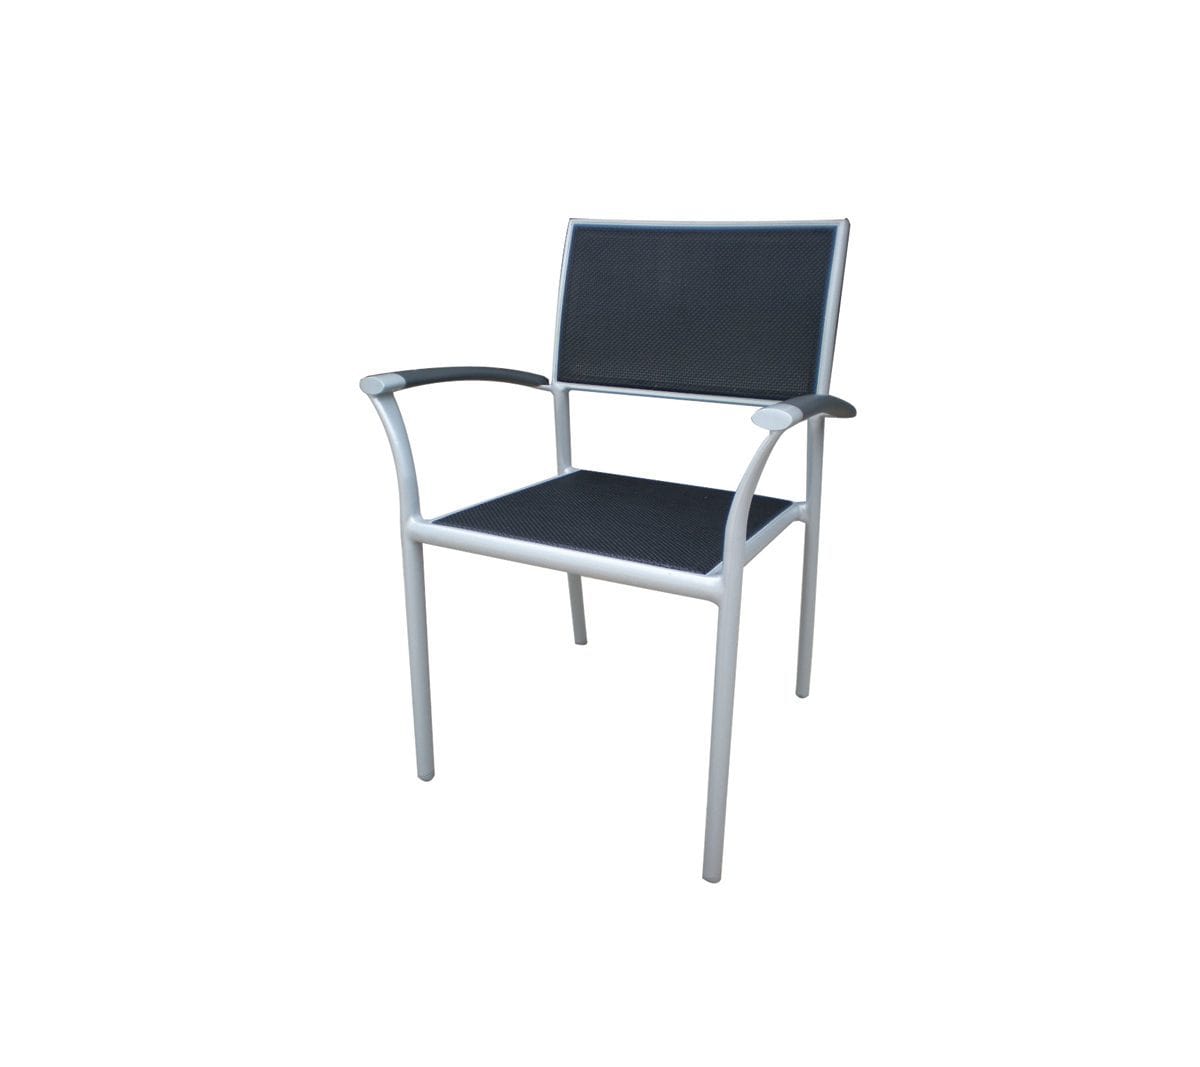 Ratana Arm Chair New Roma Sling Arm Chair